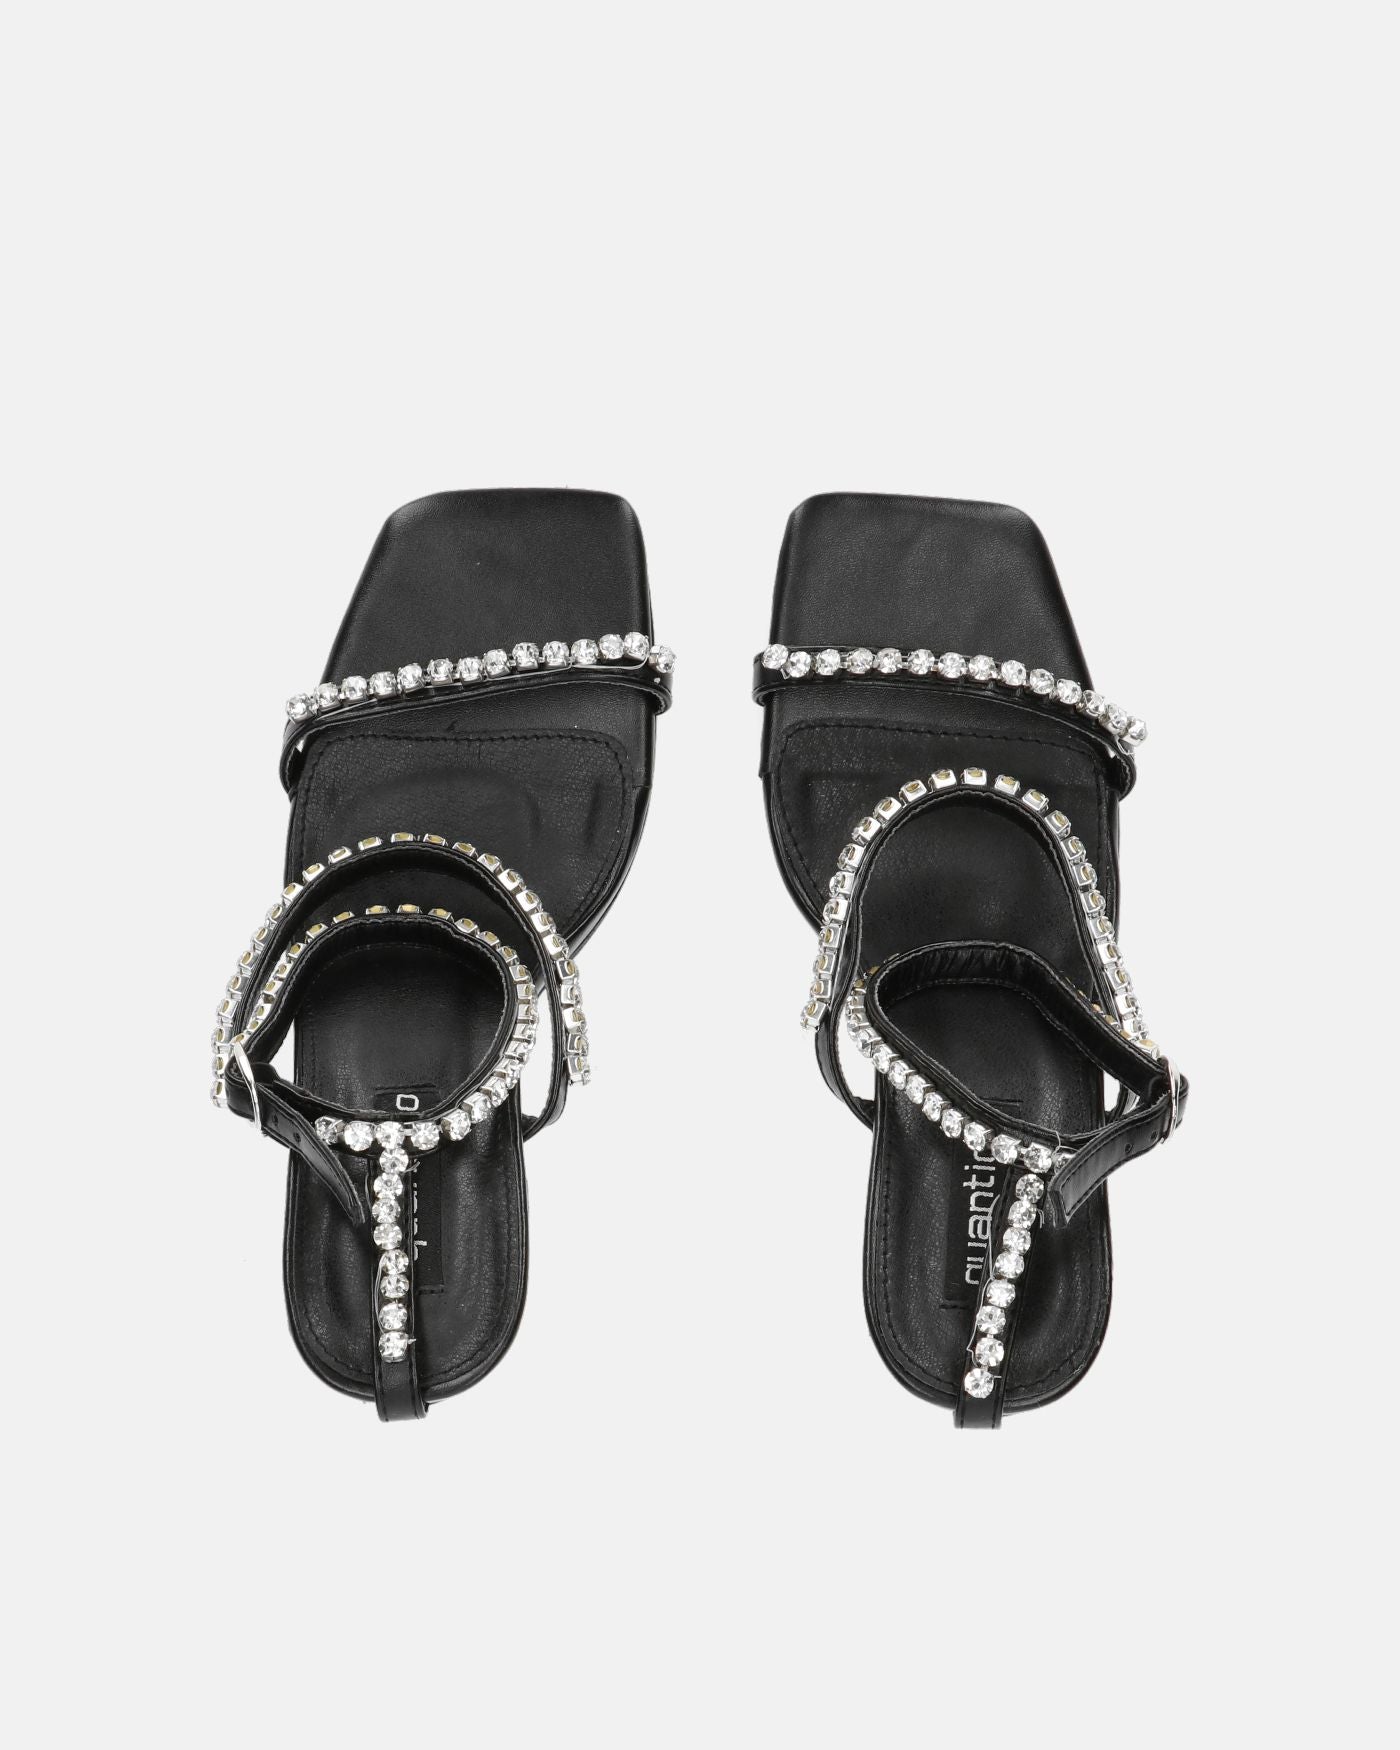 TAHLA - sandalo nero con tacco e gemme argentate